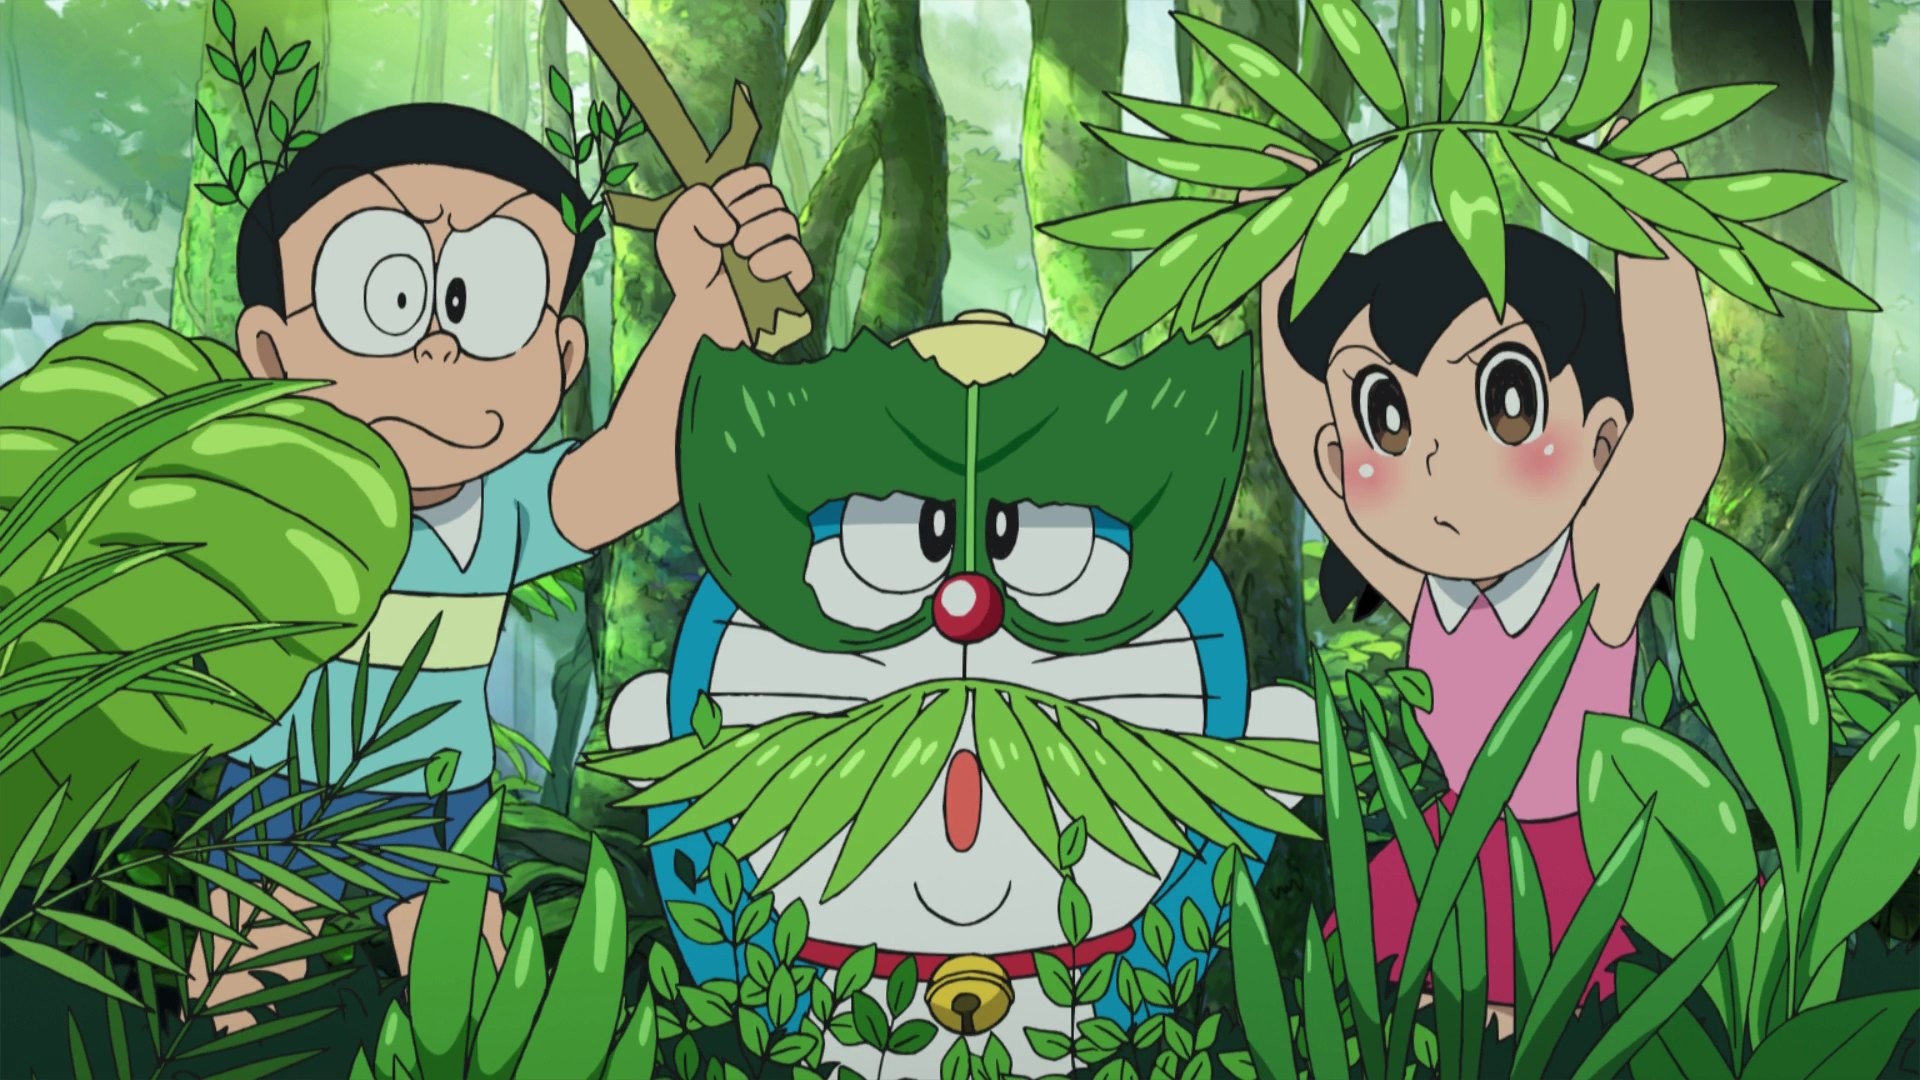 Hãy tải ngay hình nền Doraemon độc đáo và đầy tình cảm này để chào đón chú mèo máy ưu tú trong màn hình điện thoại của bạn.